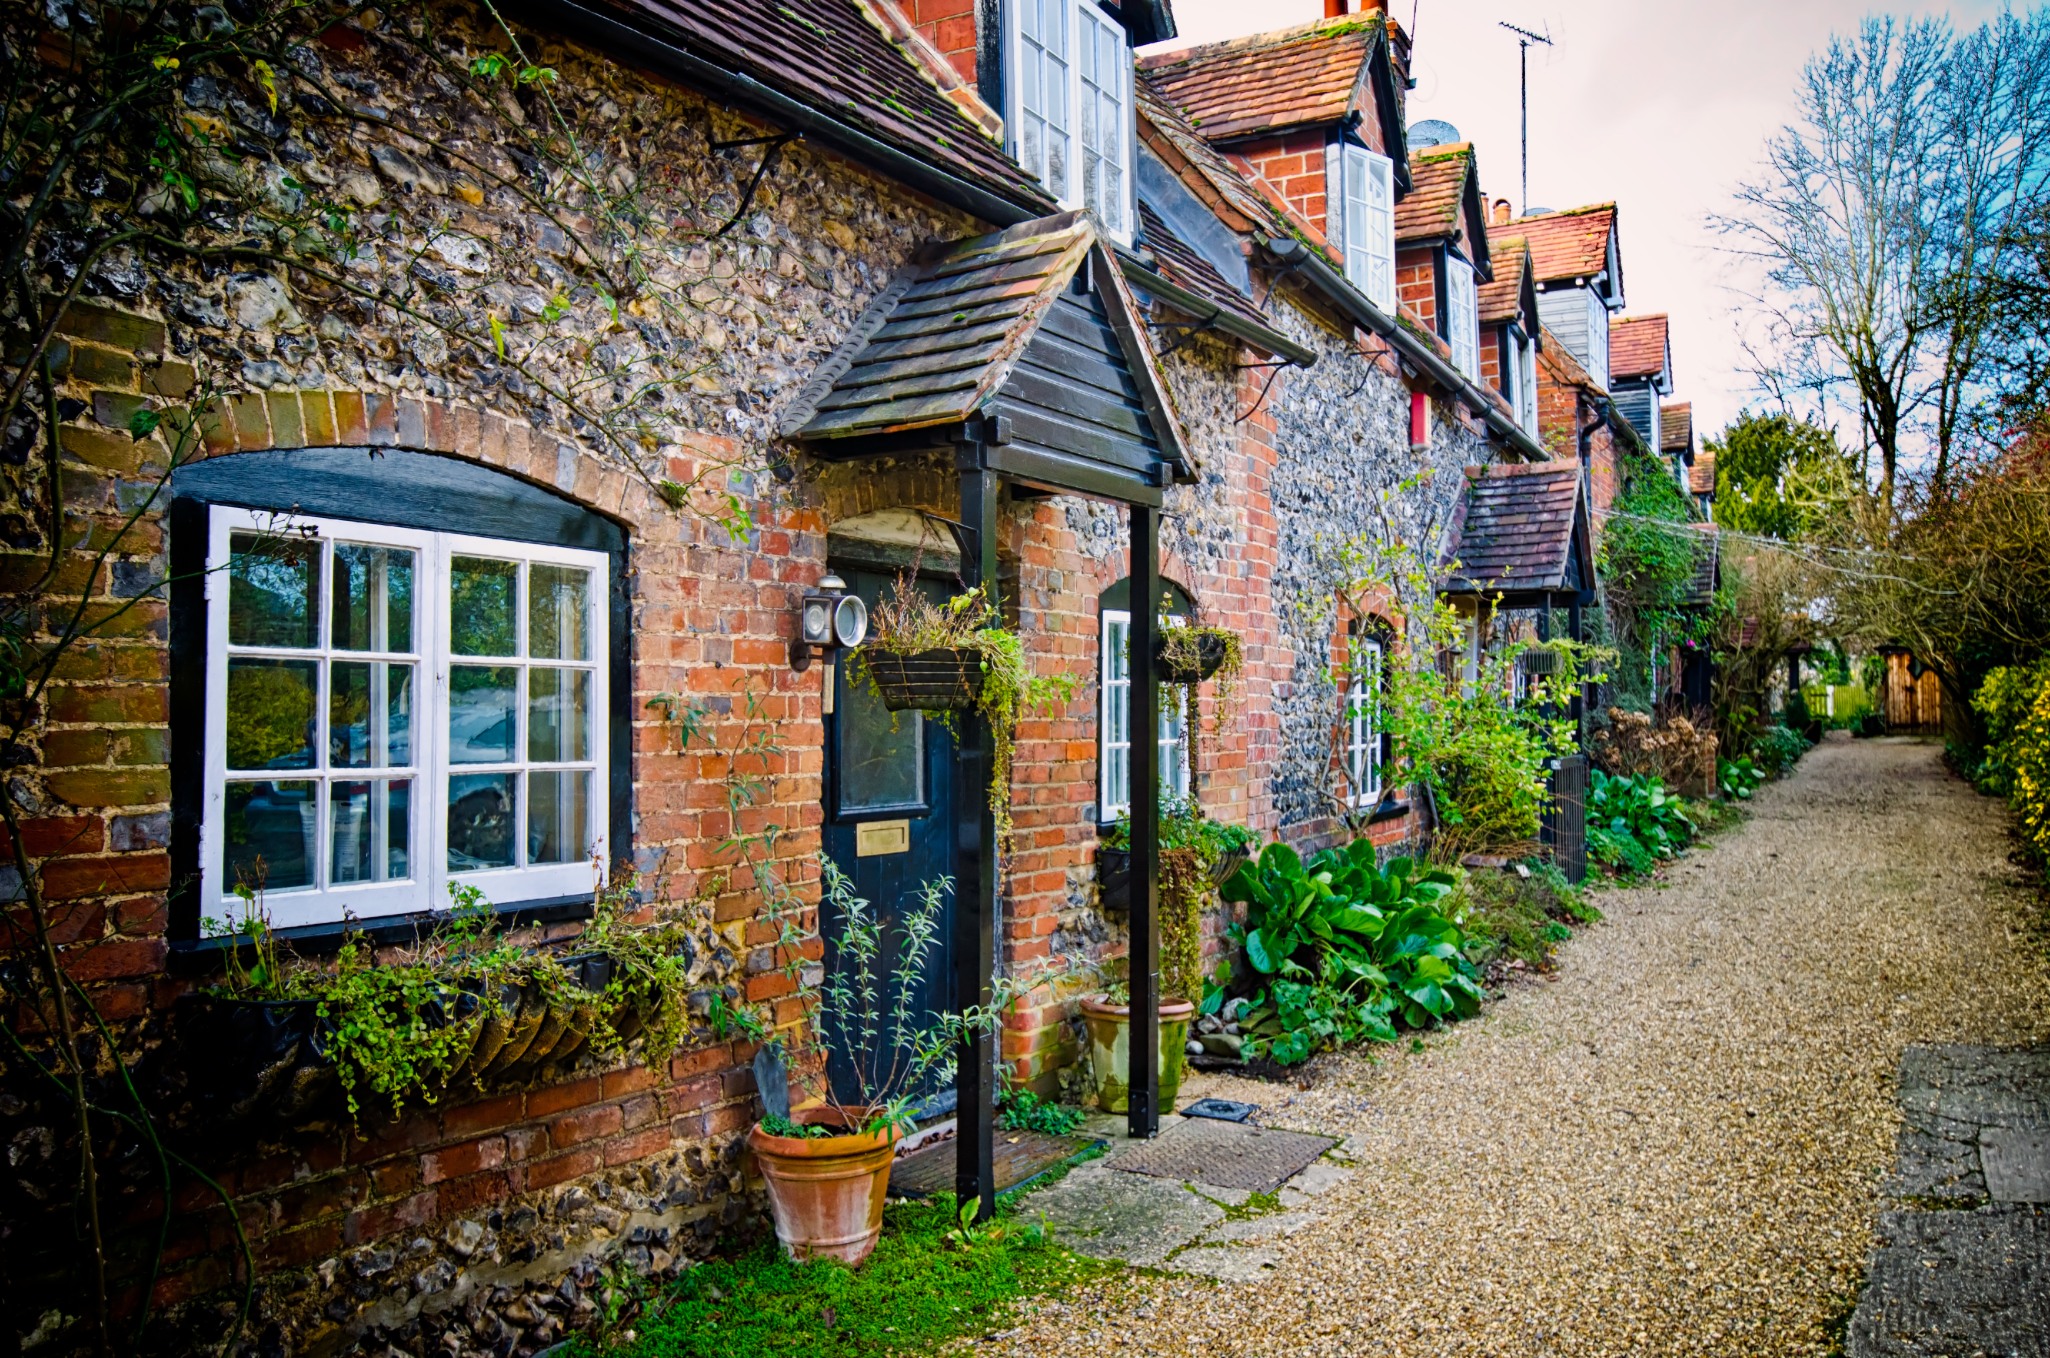 Old properties in UK Village